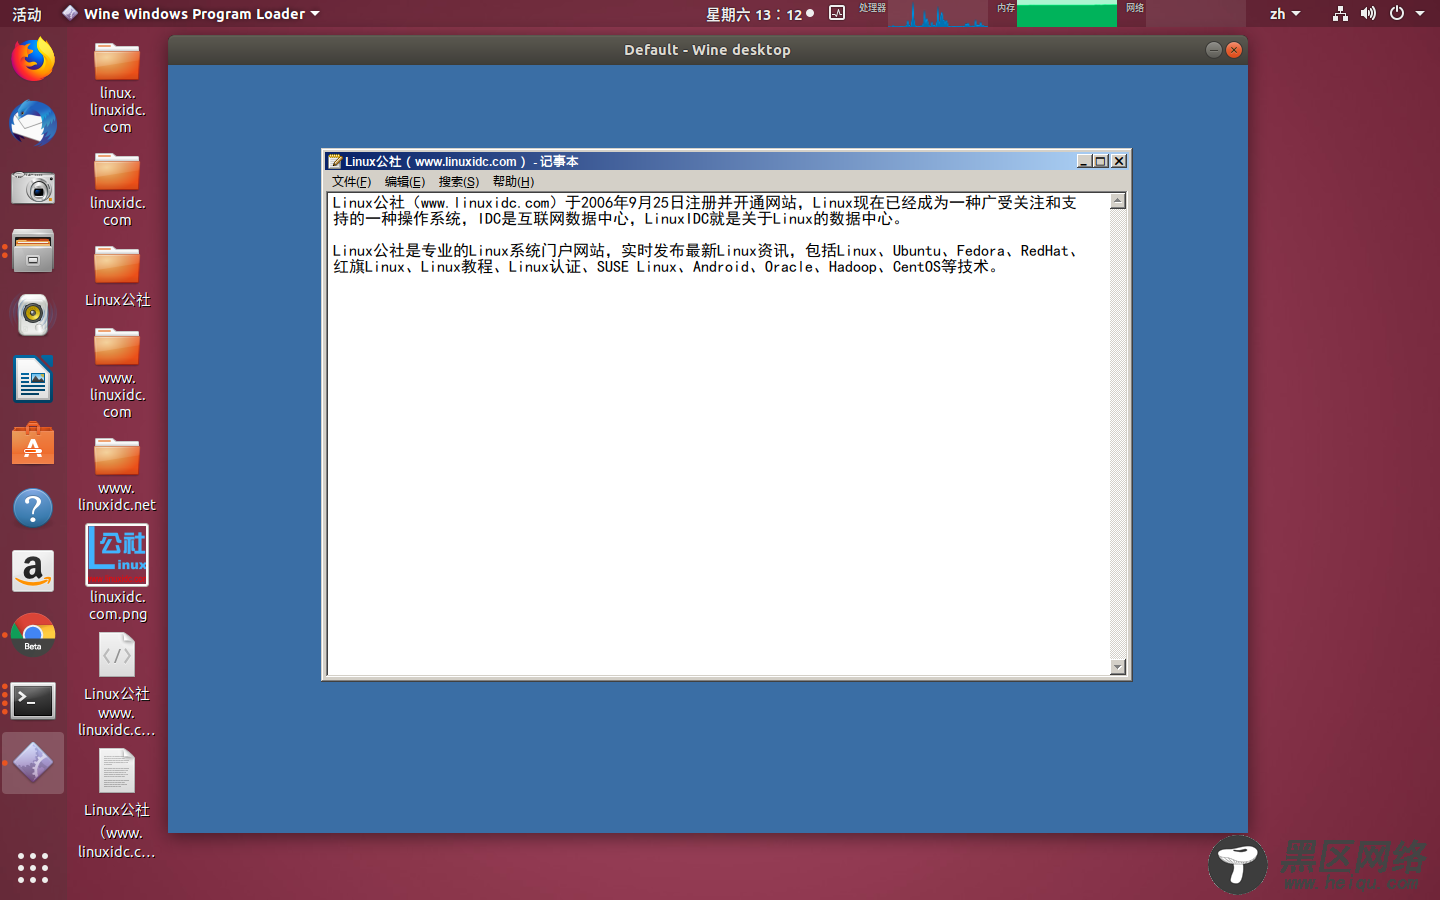 Ubuntu 安装 Wine 4.4 并设置微软雅黑字体解决中文乱码